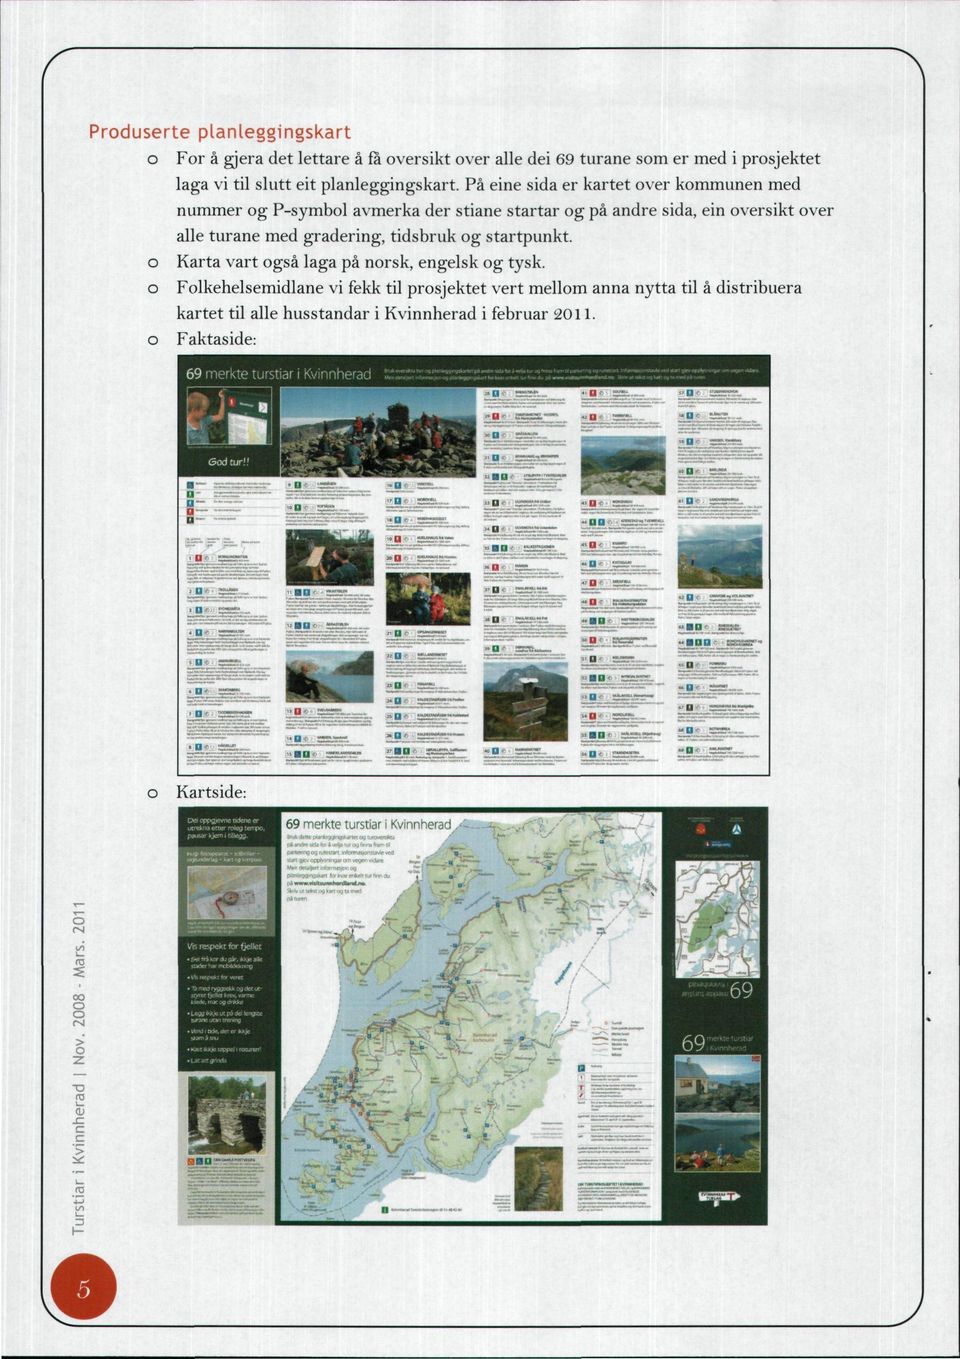 Karta vart gså laga på nrsk, engelsk g tysk. Flkehelsemidlane vi fekk til prsjektet vert mellm anna nytta til å distribuera kartet til alle husstandar i Kvinnherad i februar 2011.